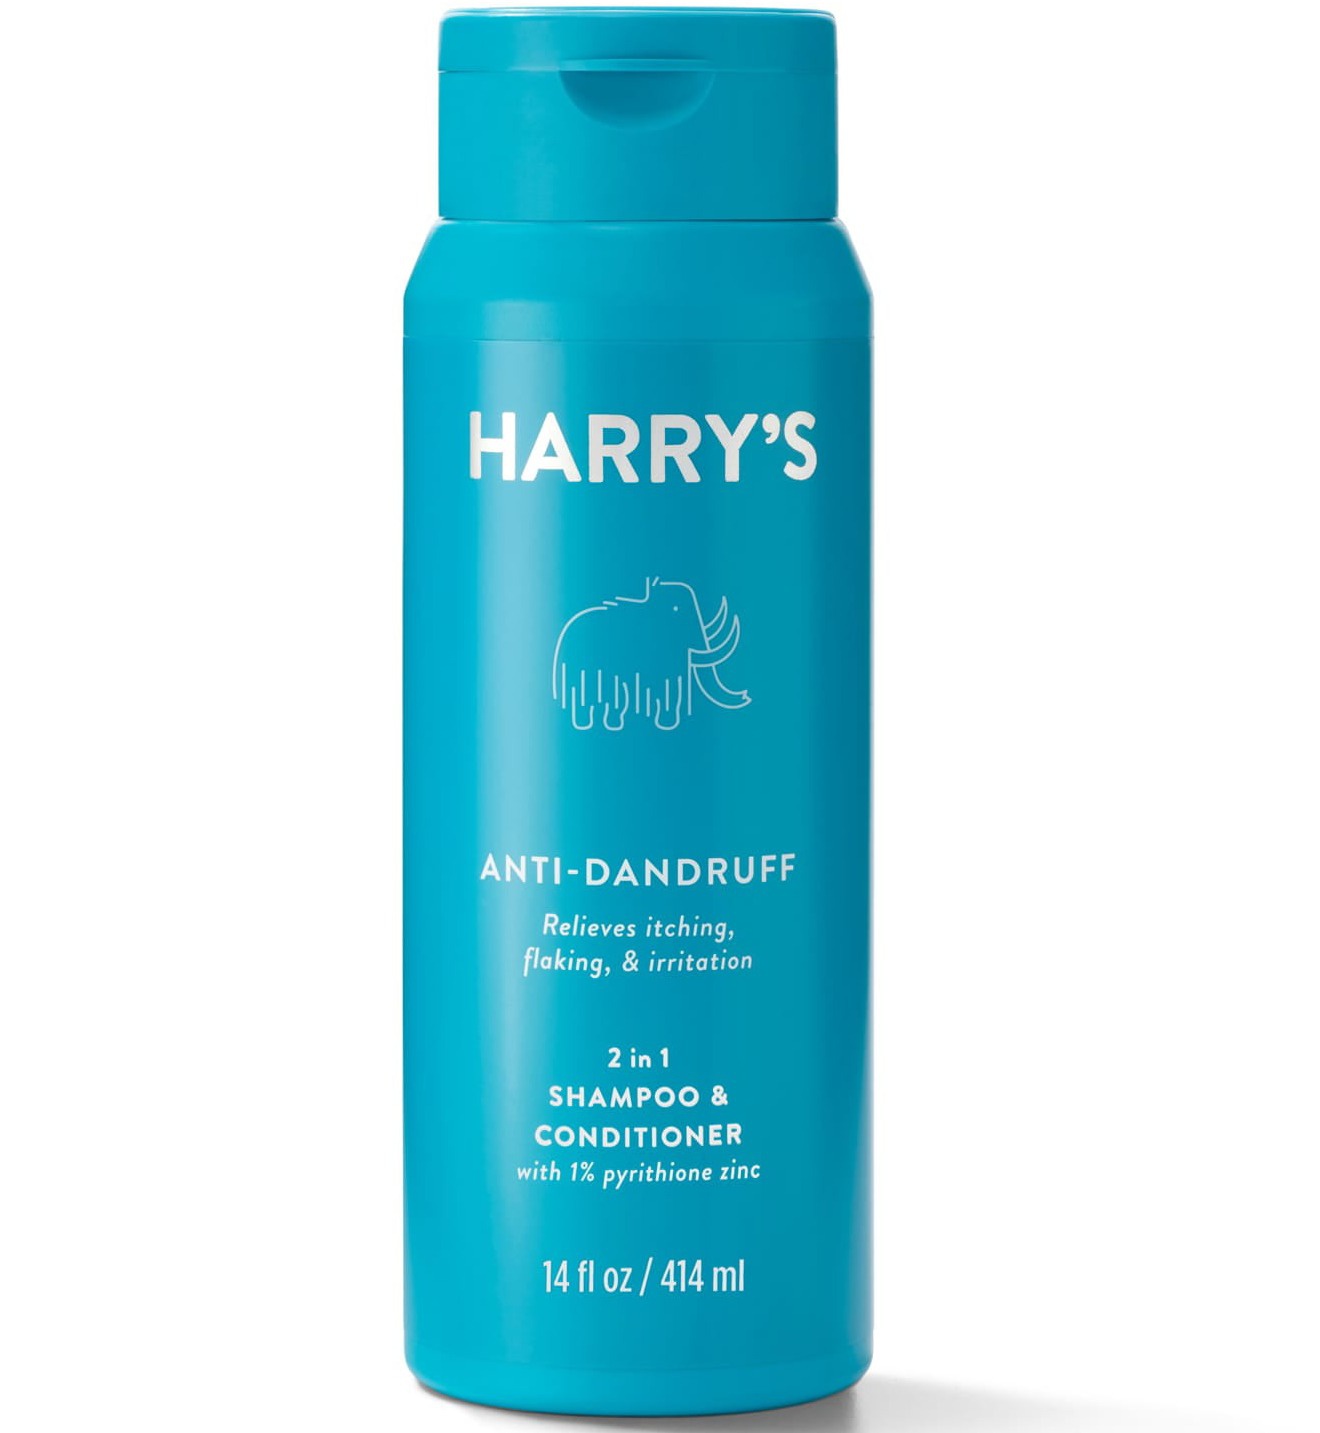 Harry’s Anti-dandruff 2 In 1 Shampoo & Conditioner